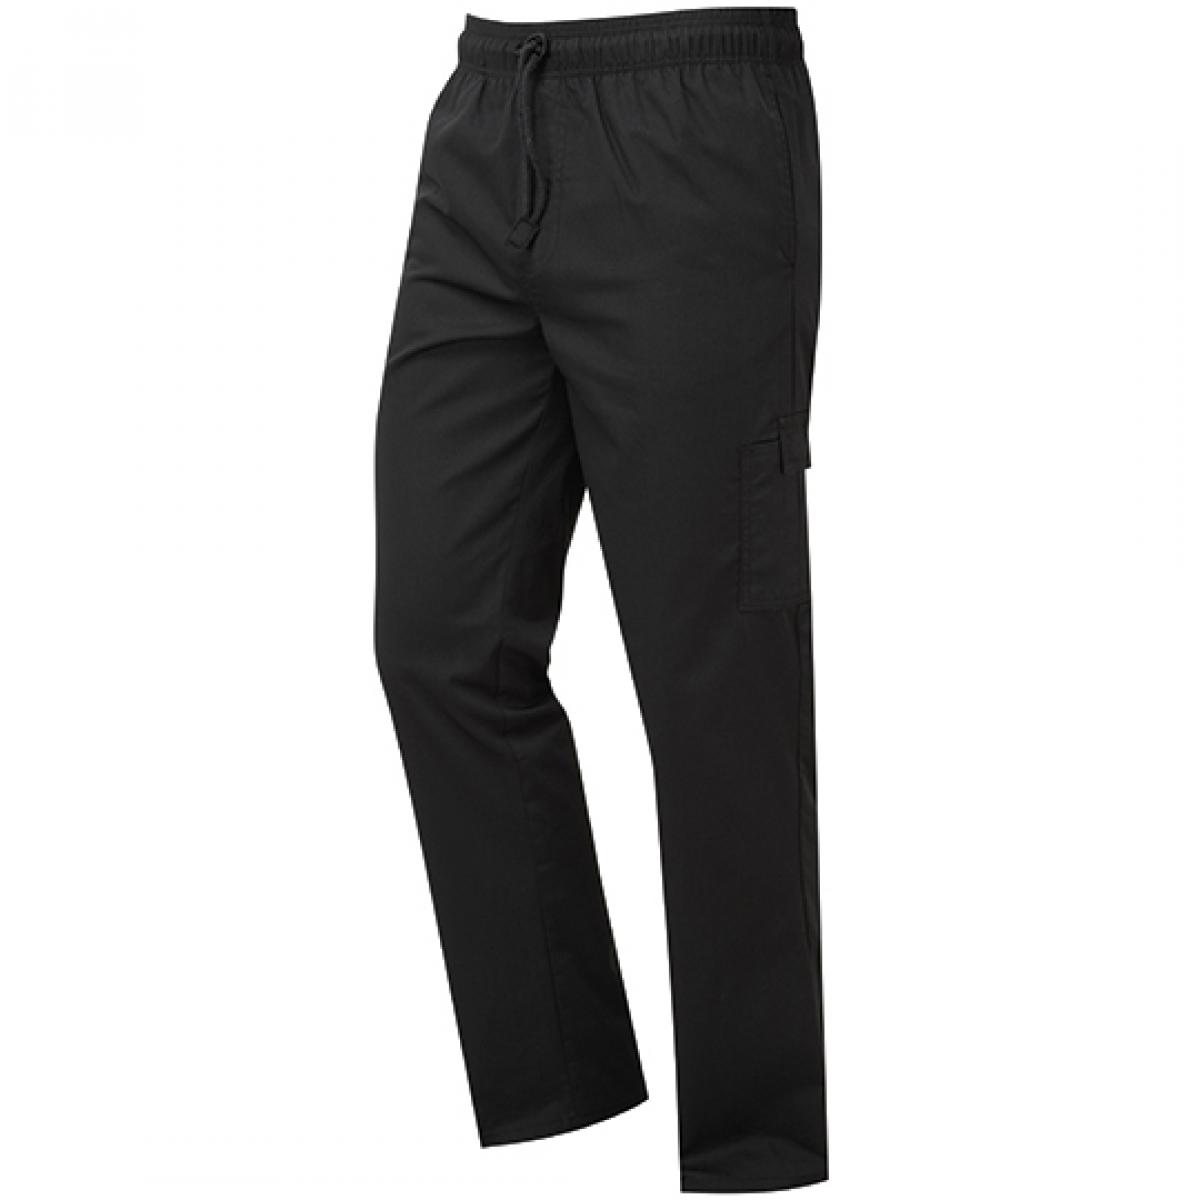 Hersteller: Premier Workwear Herstellernummer: PR555 Artikelbezeichnung: Essential Chefs Cargo Pocket Trousers, Länge: 82 cm Farbe: Black